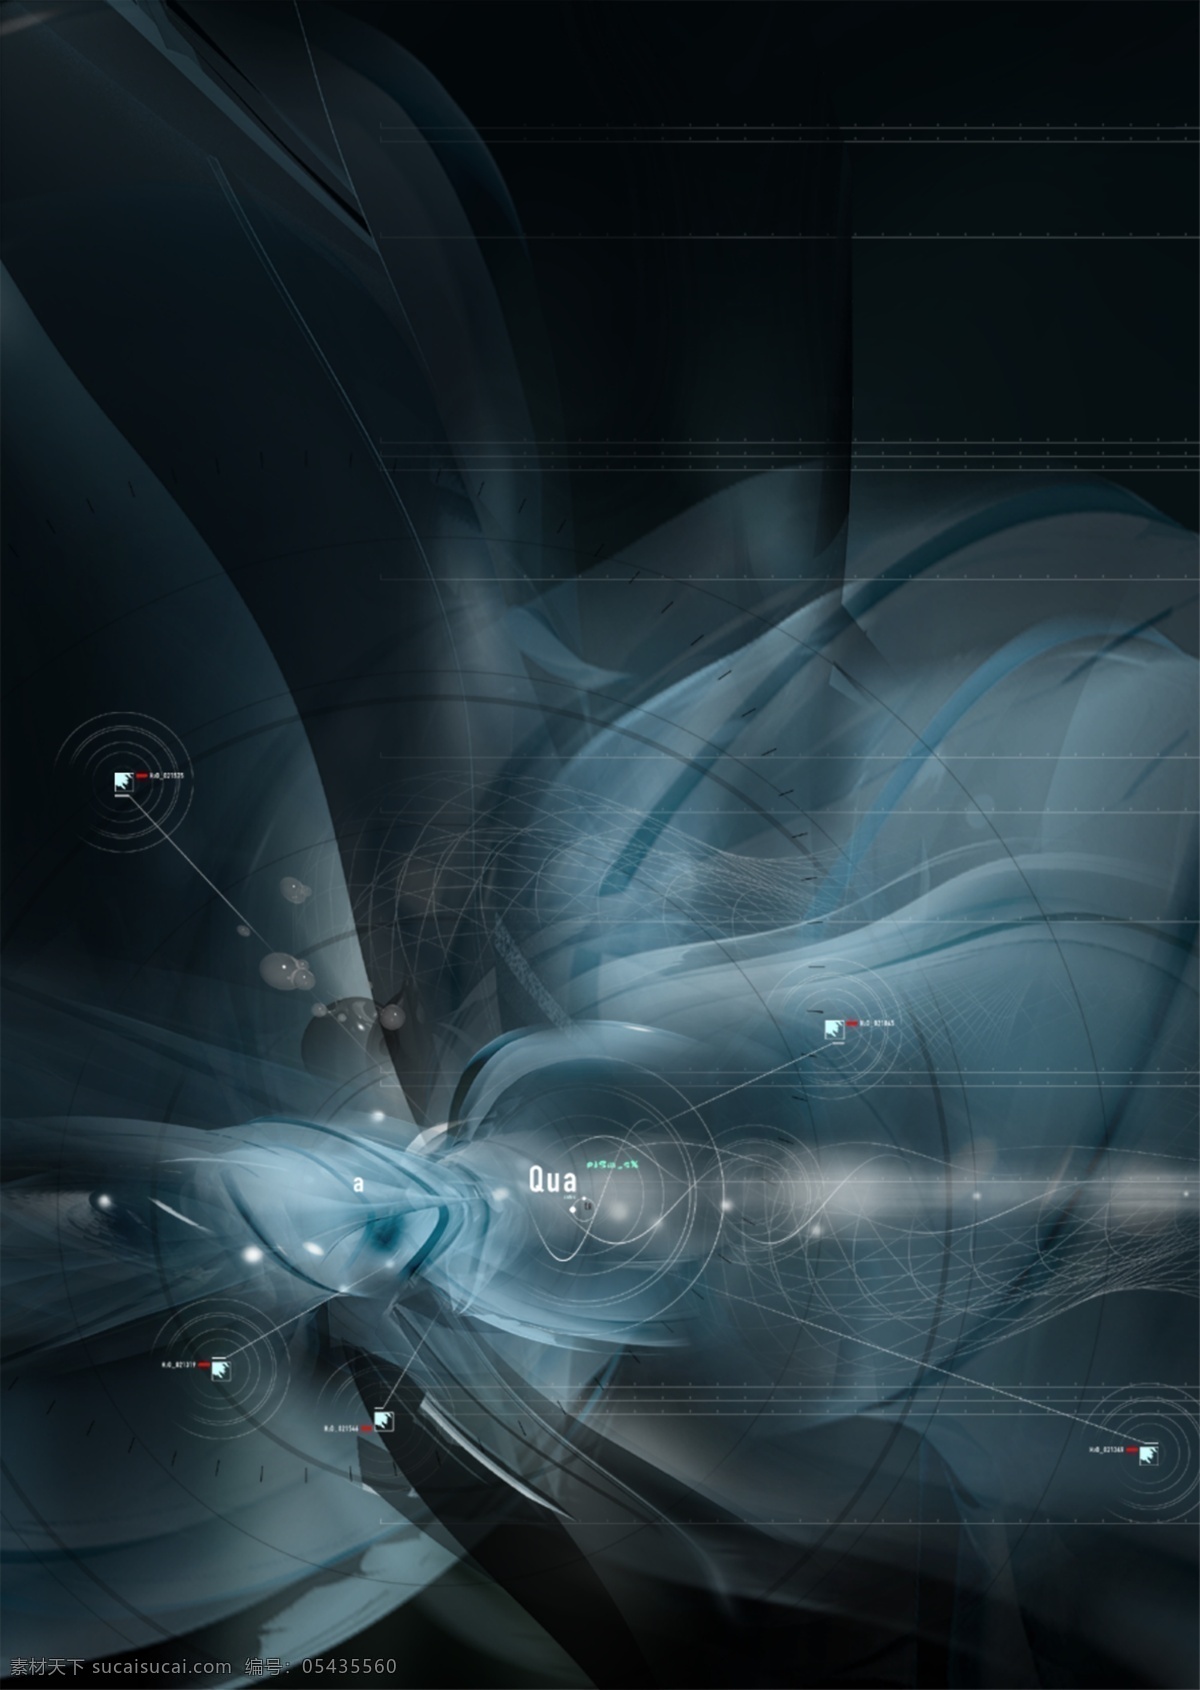 数码 游戏背景 黑暗 底纹 分层 3d 抽象 动感 后现代 科技 力量 梦幻 游戏背景设计 前卫 宇宙 异度空间 速度 艺术 张力 原创设计 其他原创设计